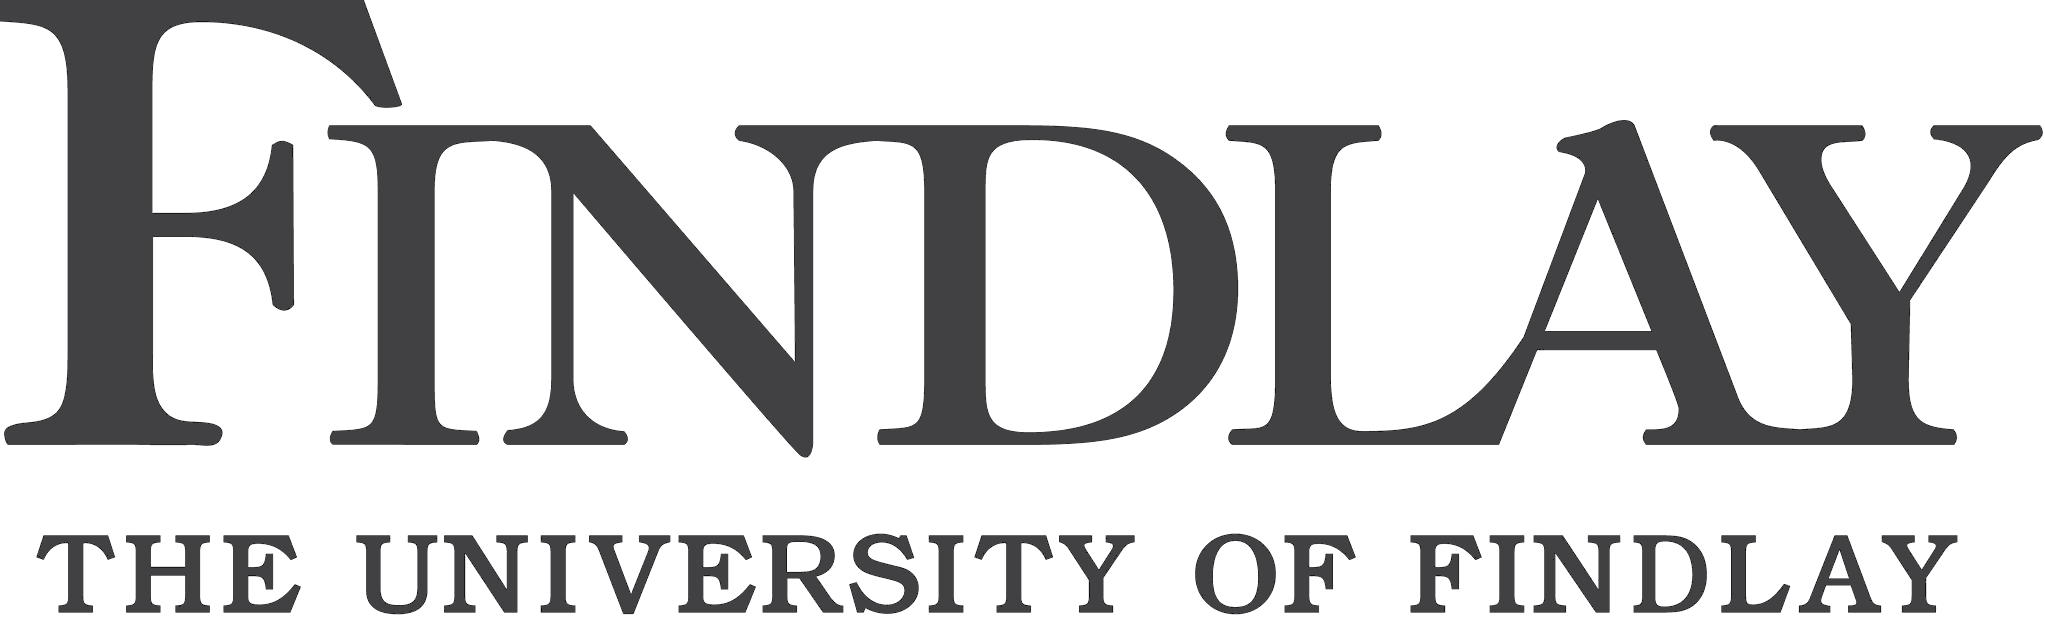 Findlay Logo - File:University of Findlay logo.png - Wikimedia Commons